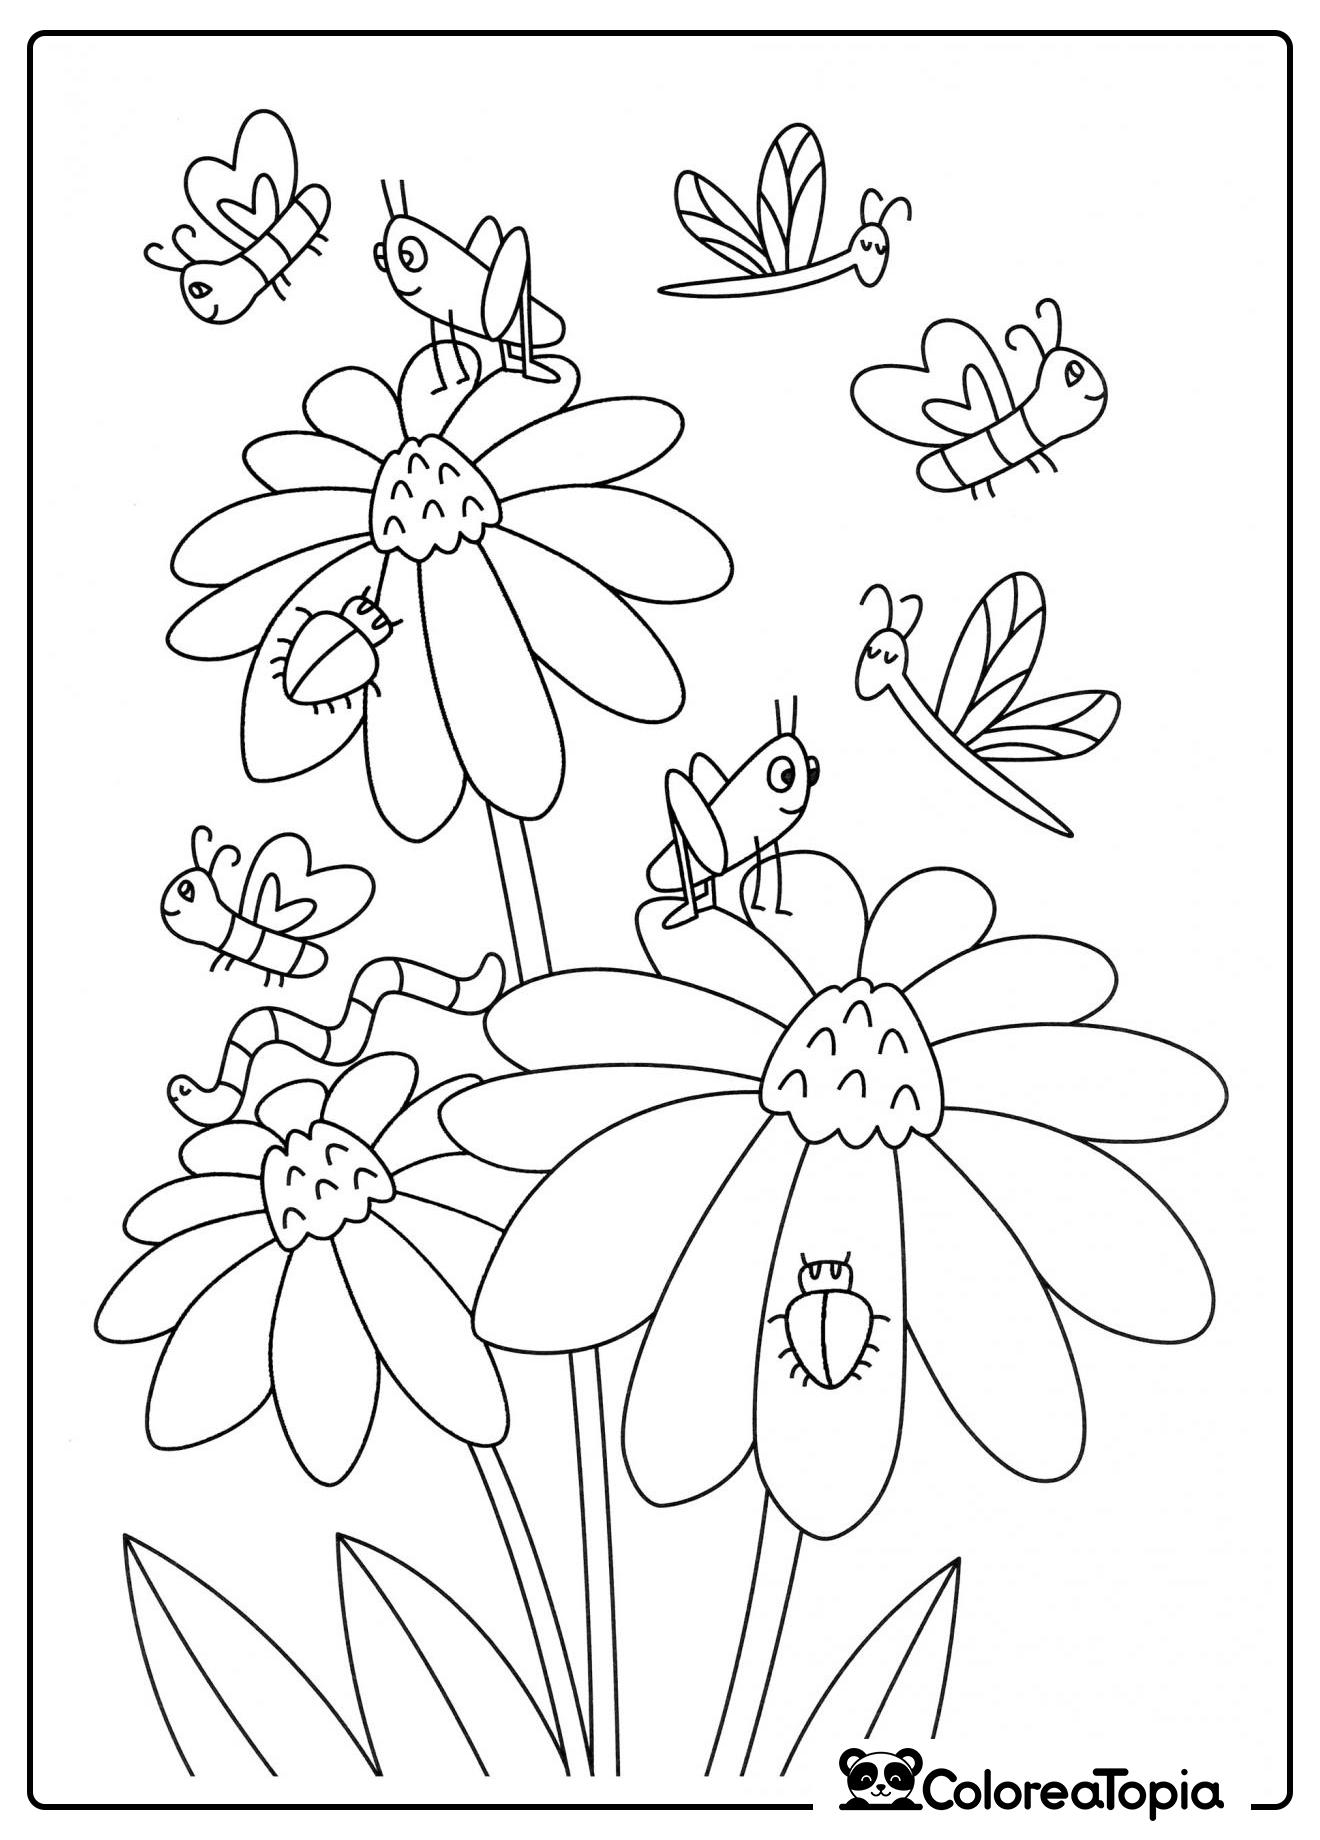 Flores y insectos - dibujo para colorear